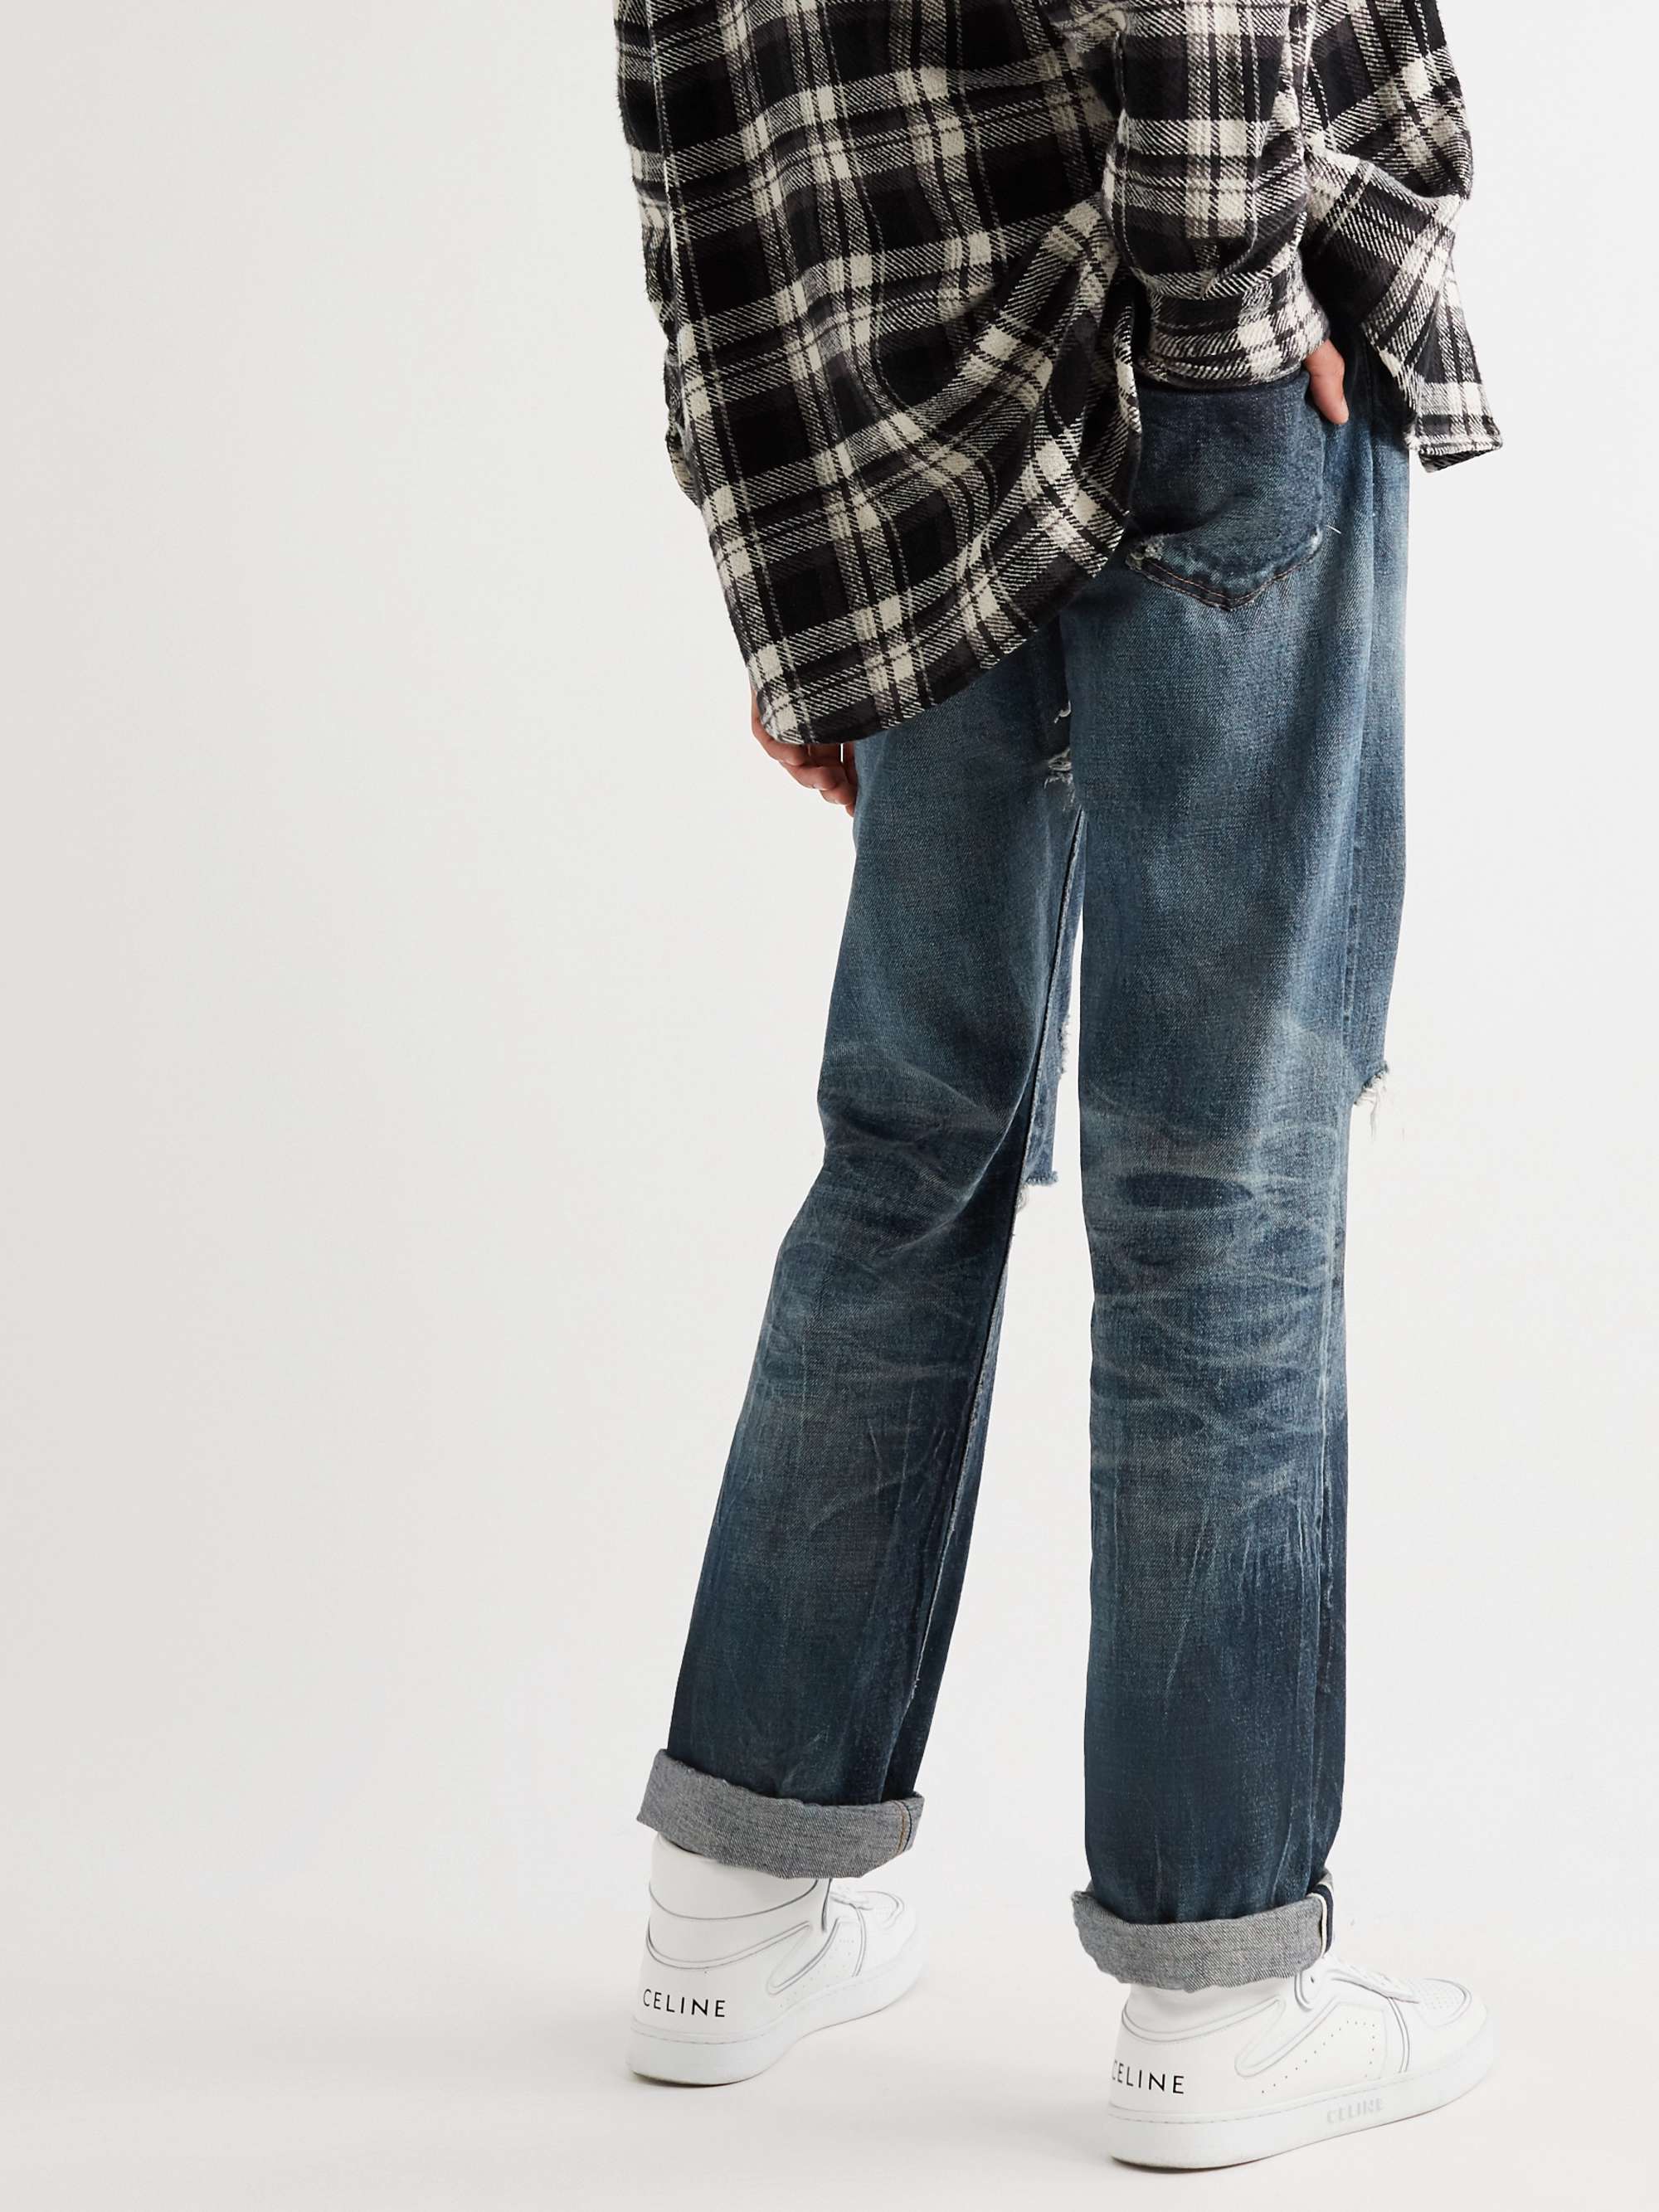 CELINE HOMME '90s Mid-Rise Selvedge Denim Jeans for Men | MR PORTER